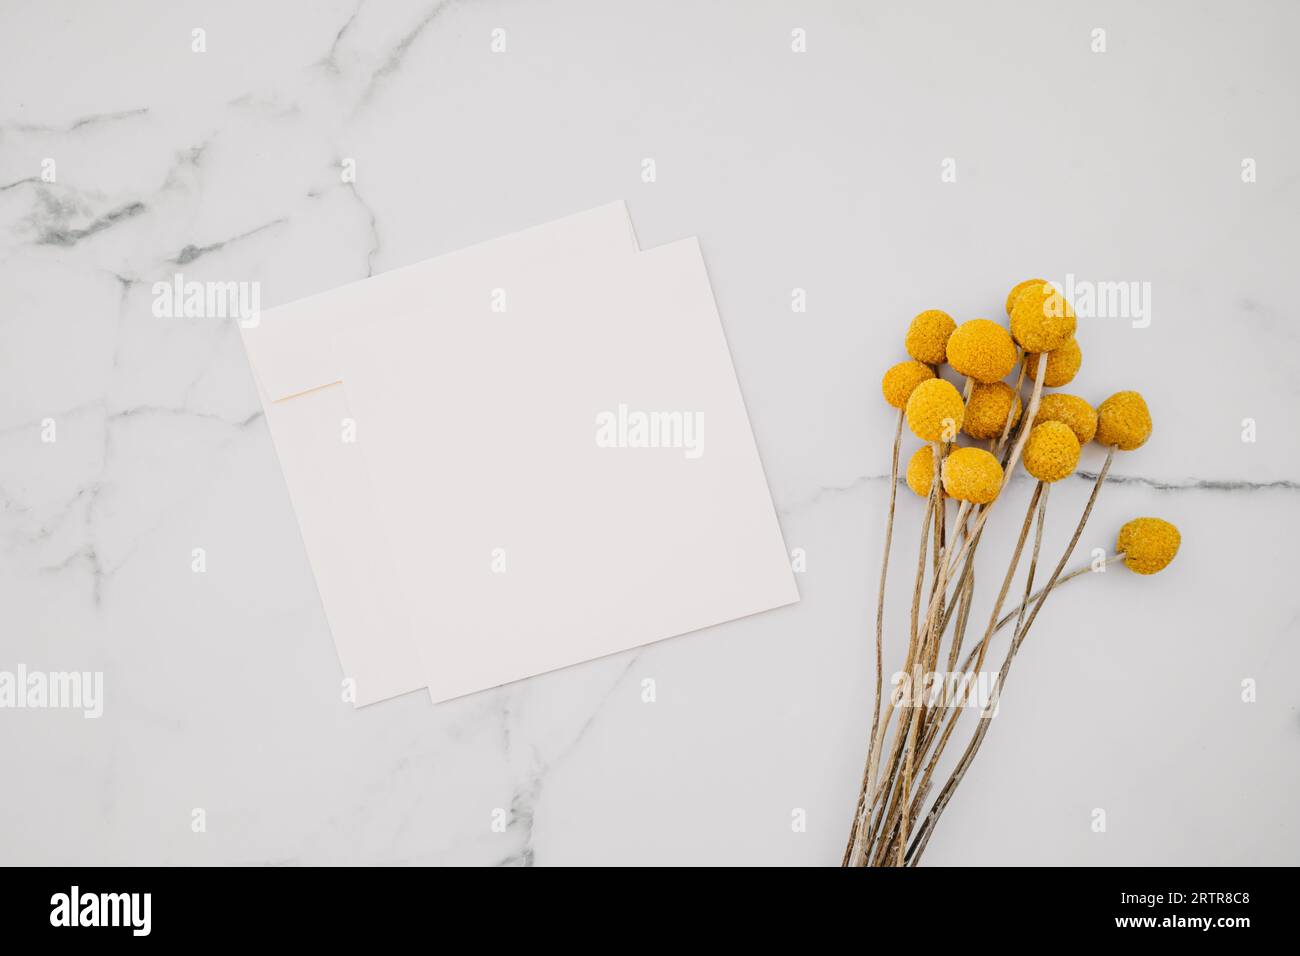 Maquette de carte carrée de papier blanc vierge et enveloppe et fleurs jaunes sur fond de marbre blanc. Gabarit esthétique minimal. Pose à plat, vue de dessus Banque D'Images